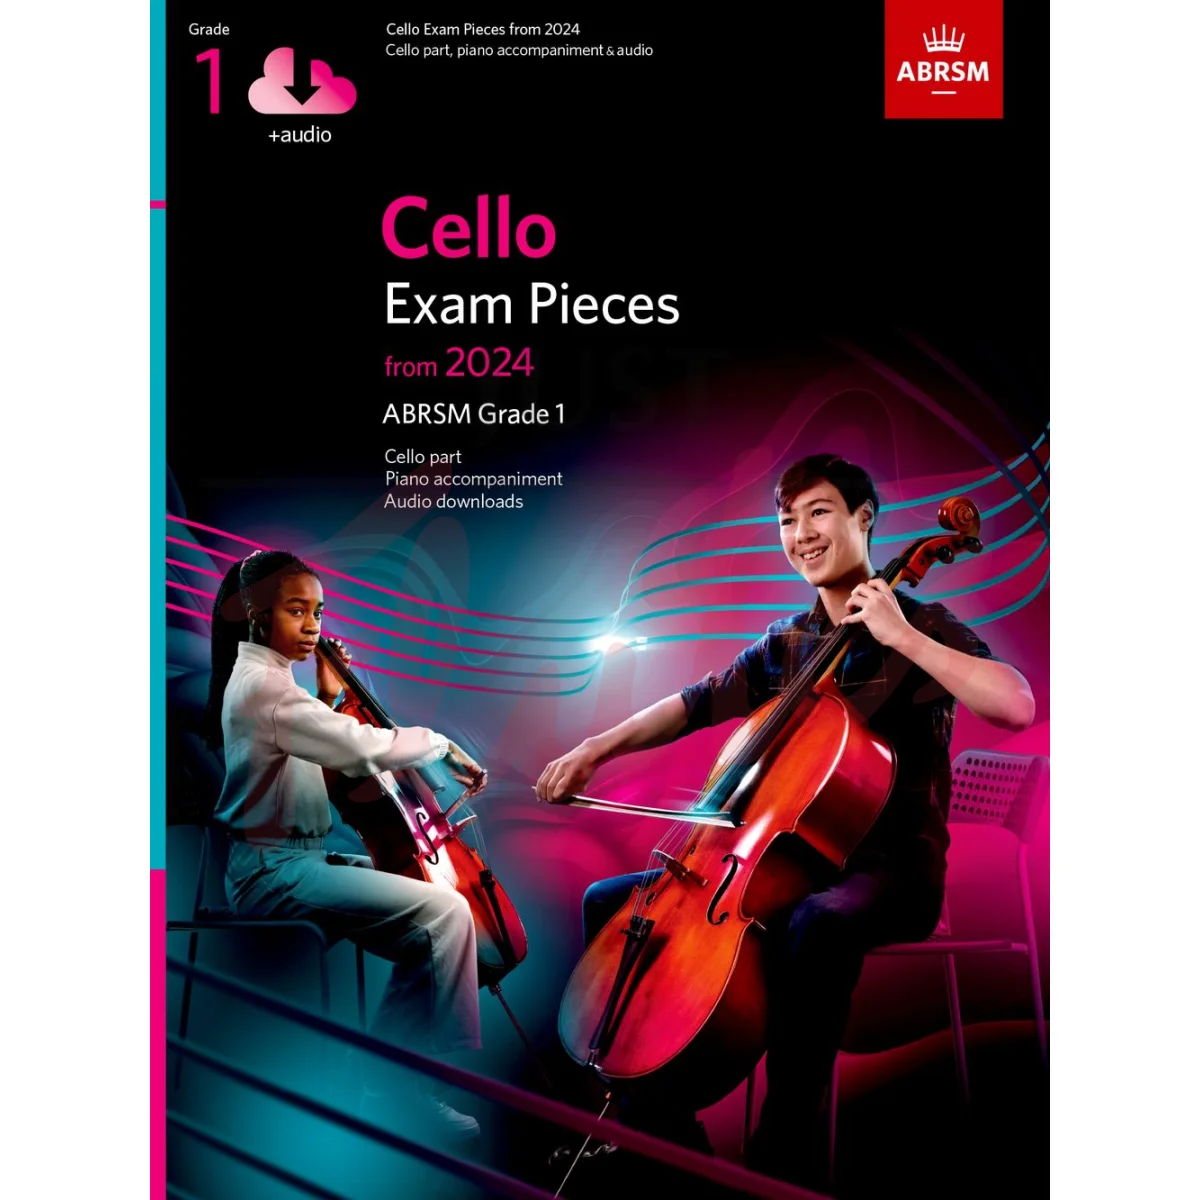 Cello Exam Pieces from 2024, Grade 1